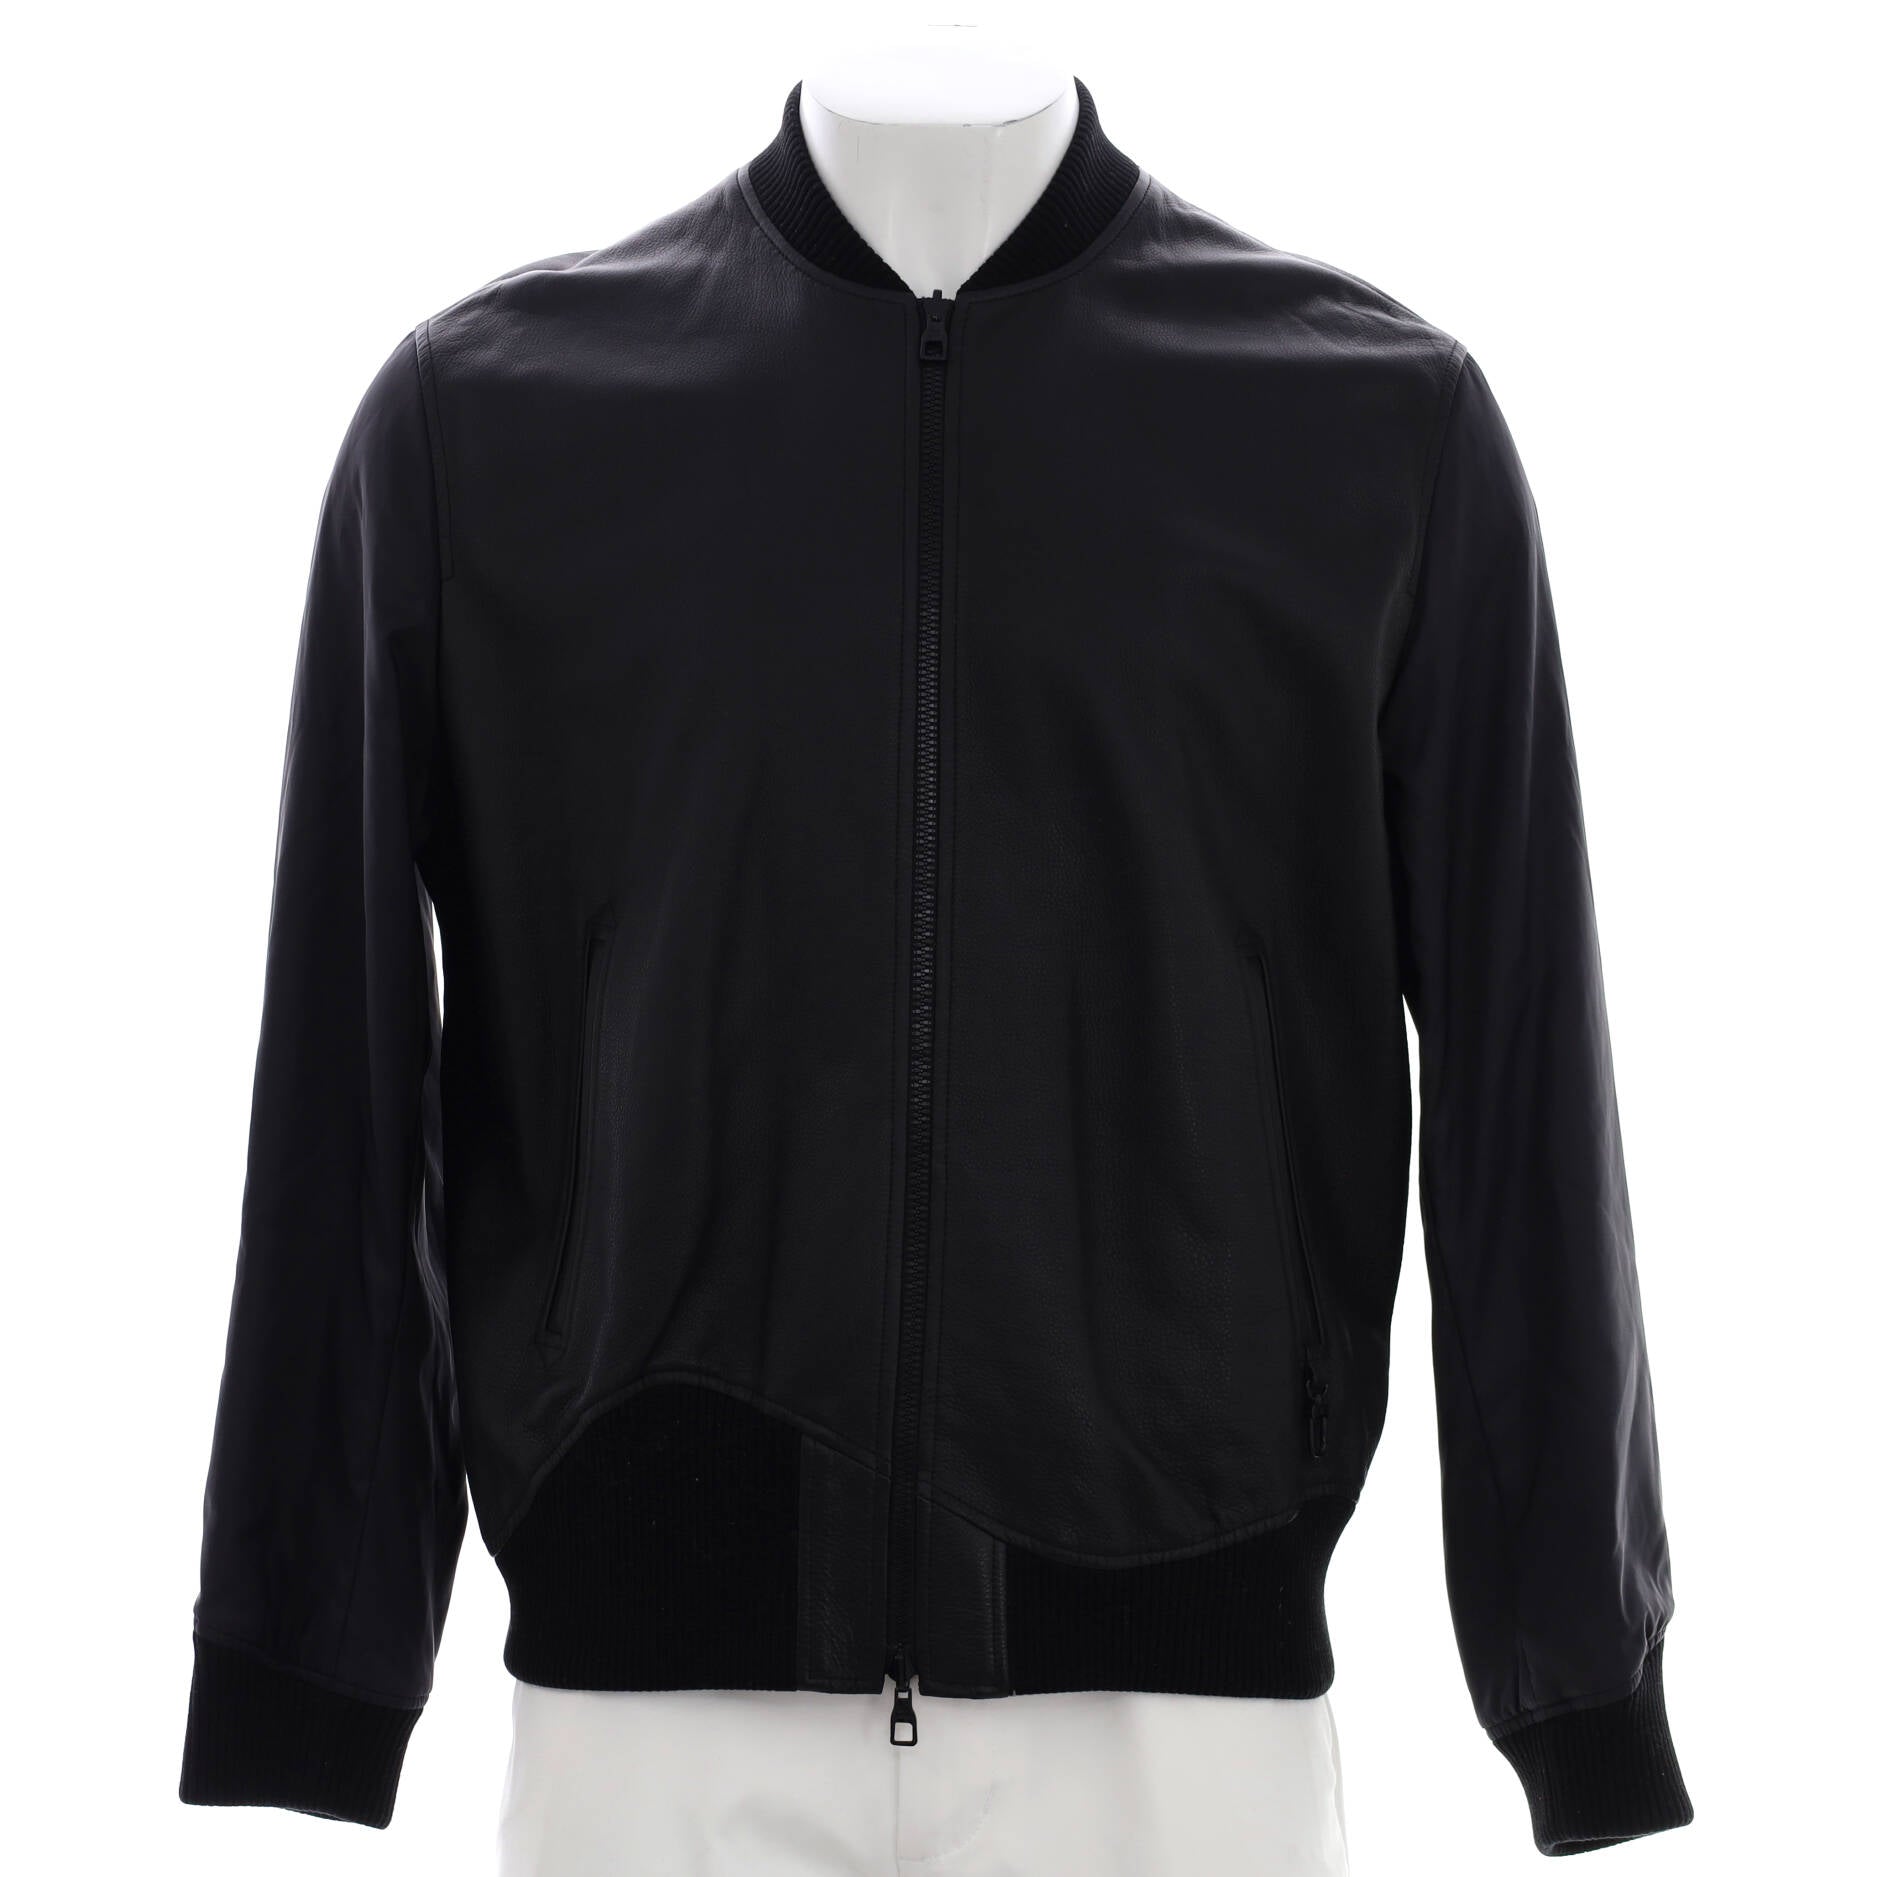 Louis Vuitton LVSE Monogram Shearling Blouson Jacket